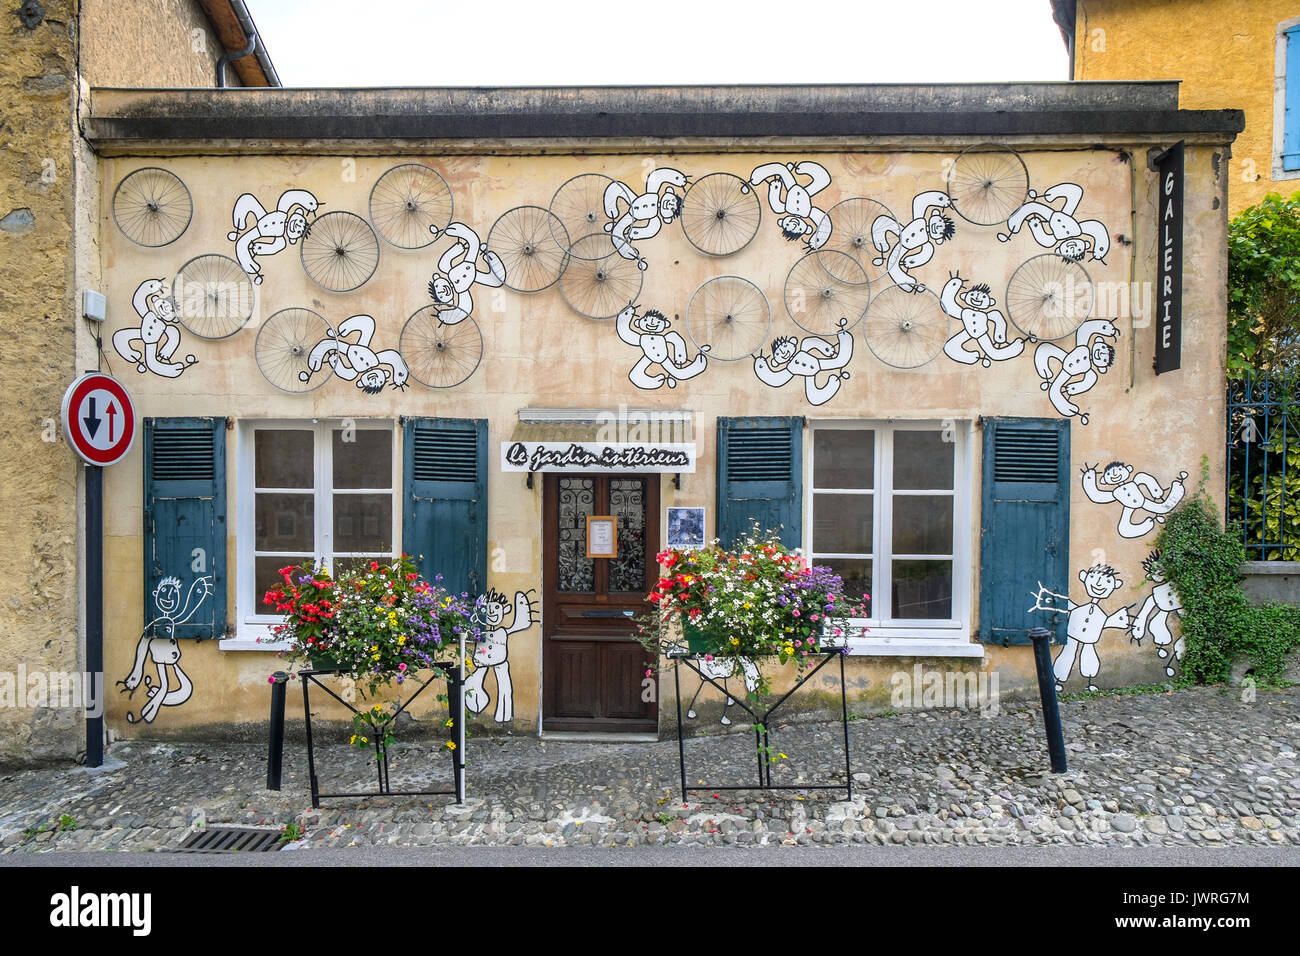 Kunst Galerie mit Zyklus räder Wandbild, Oloron-Sainte-Marie, Frankreich. Stockfoto